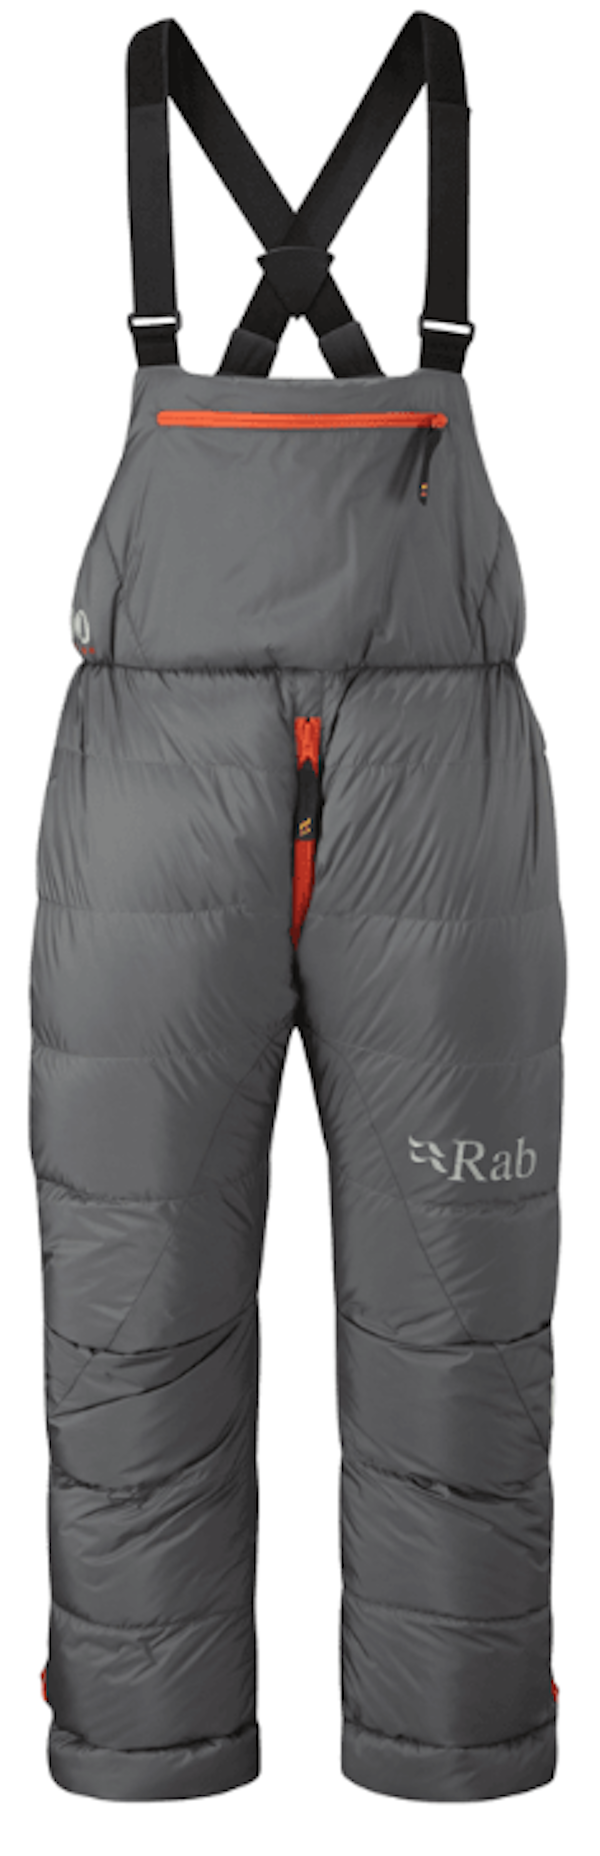 Rab Expedition 8000 - Spodnie alpinistyczne | Hardloop